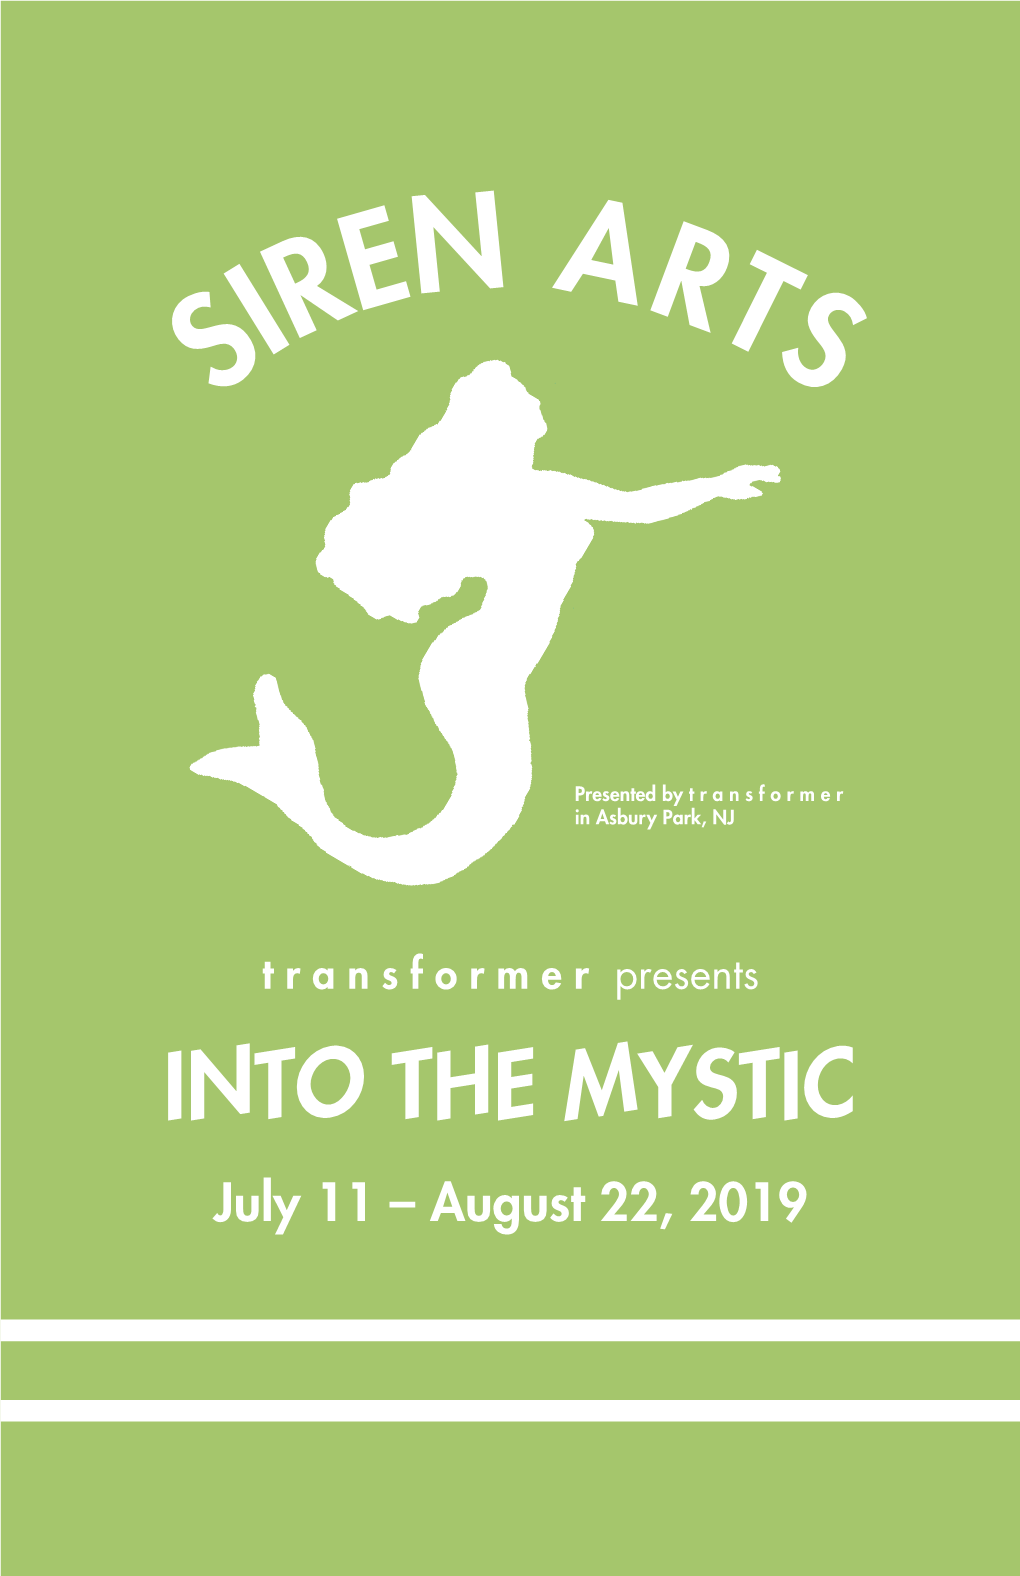 Siren Arts 2019